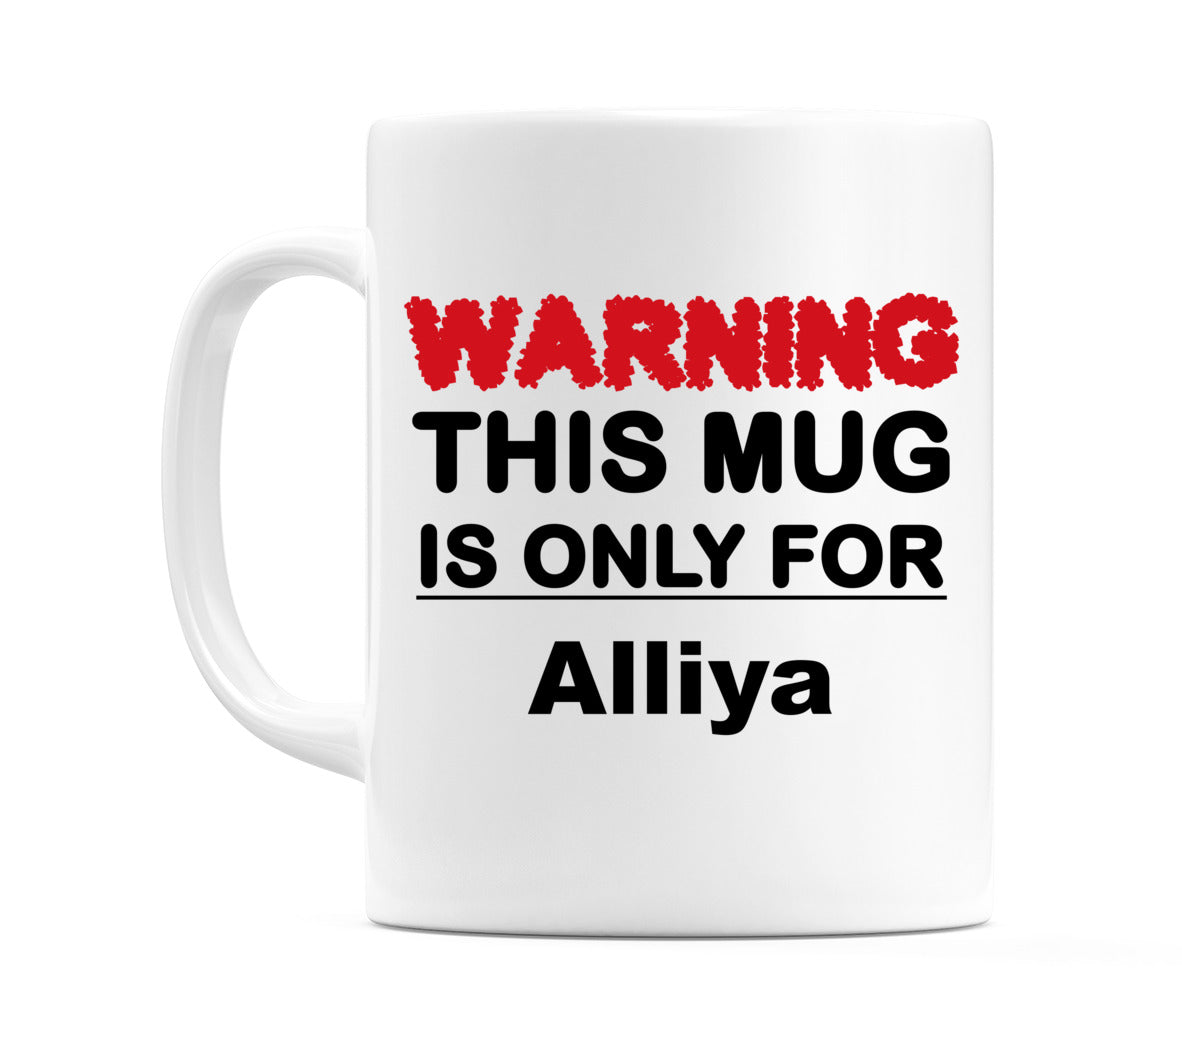 Warning This Mug is ONLY for Alliya Mug